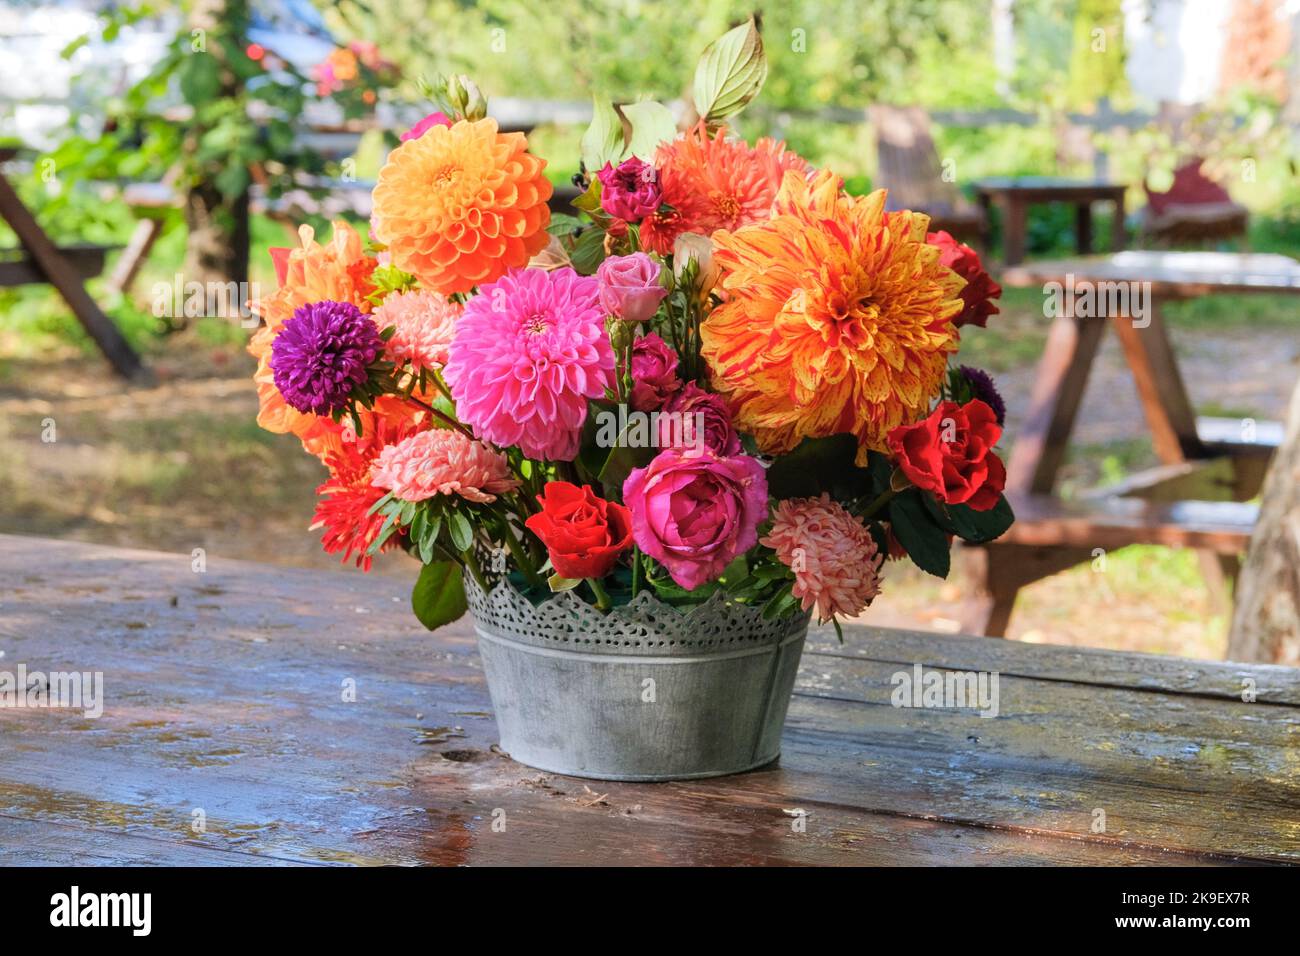 Bunte Blumen: rosen, Astern, Dahilia im Apfelgarten auf einem Holztisch. Helles, ländliches Design. Sonniger Tag. Stockfoto